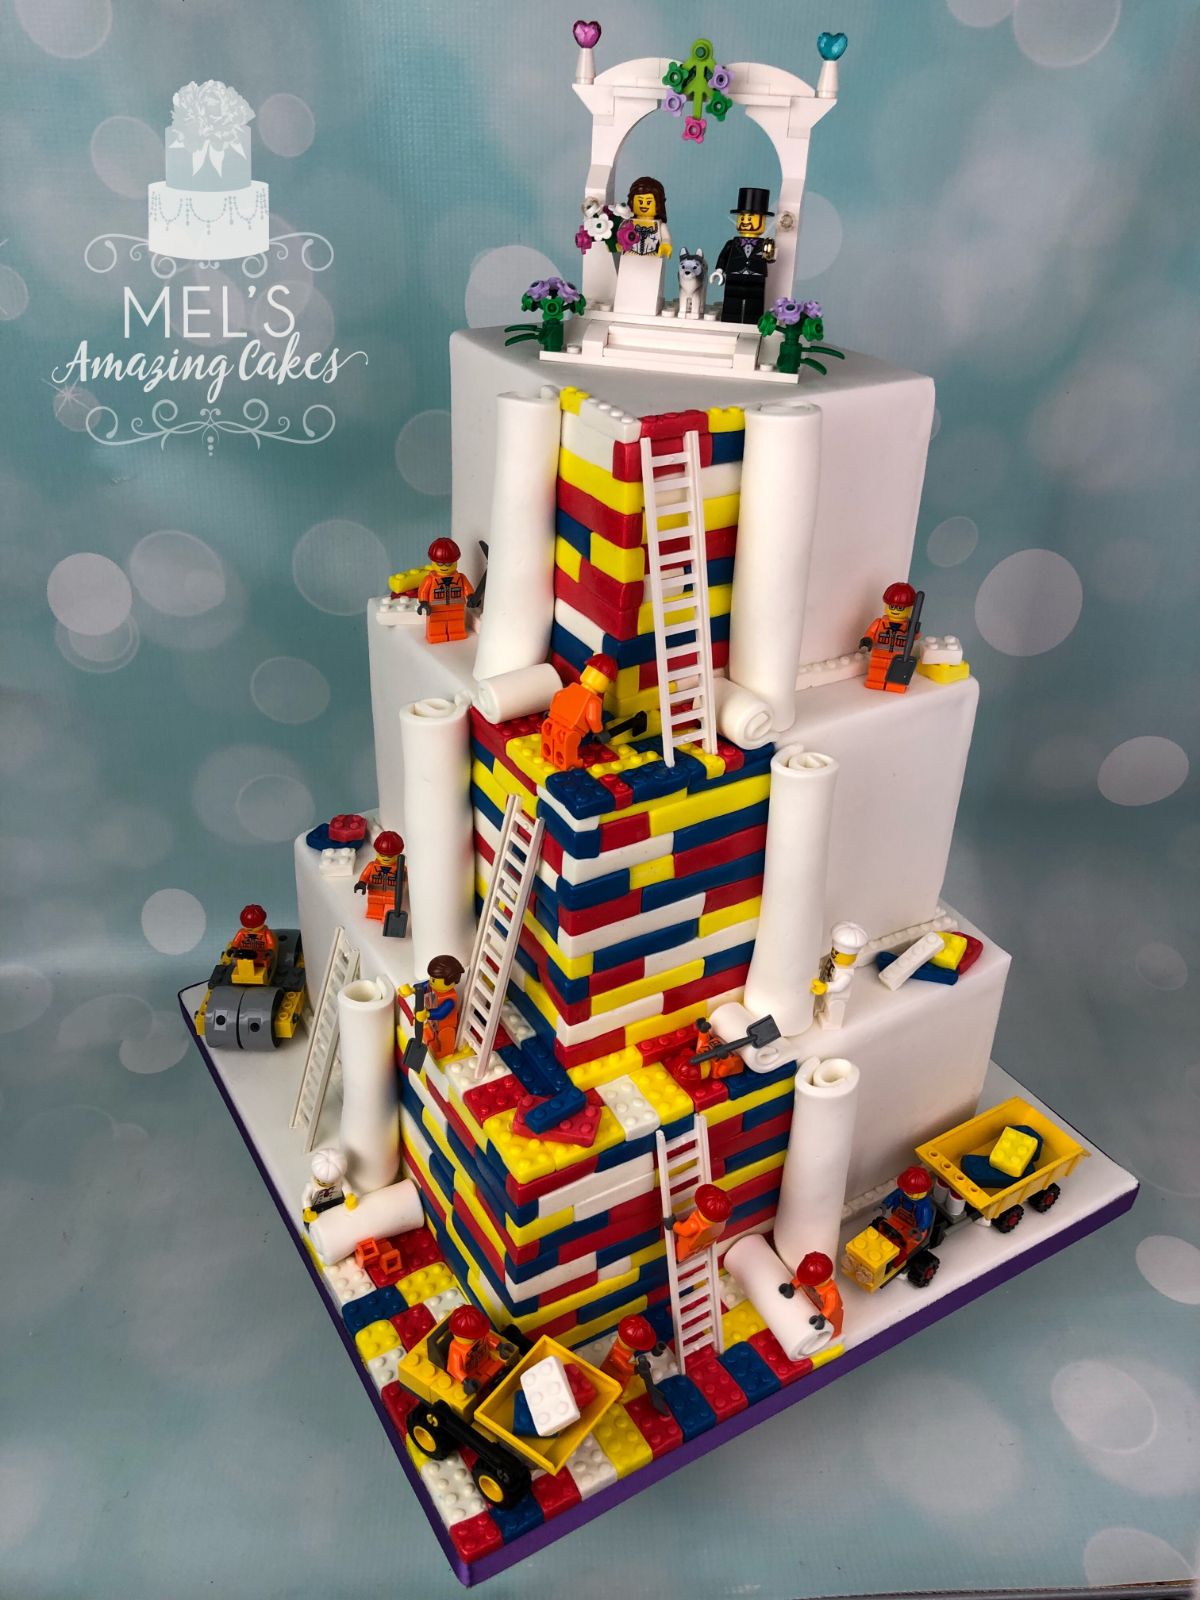 Mel's Amazing Cakes-Image-32